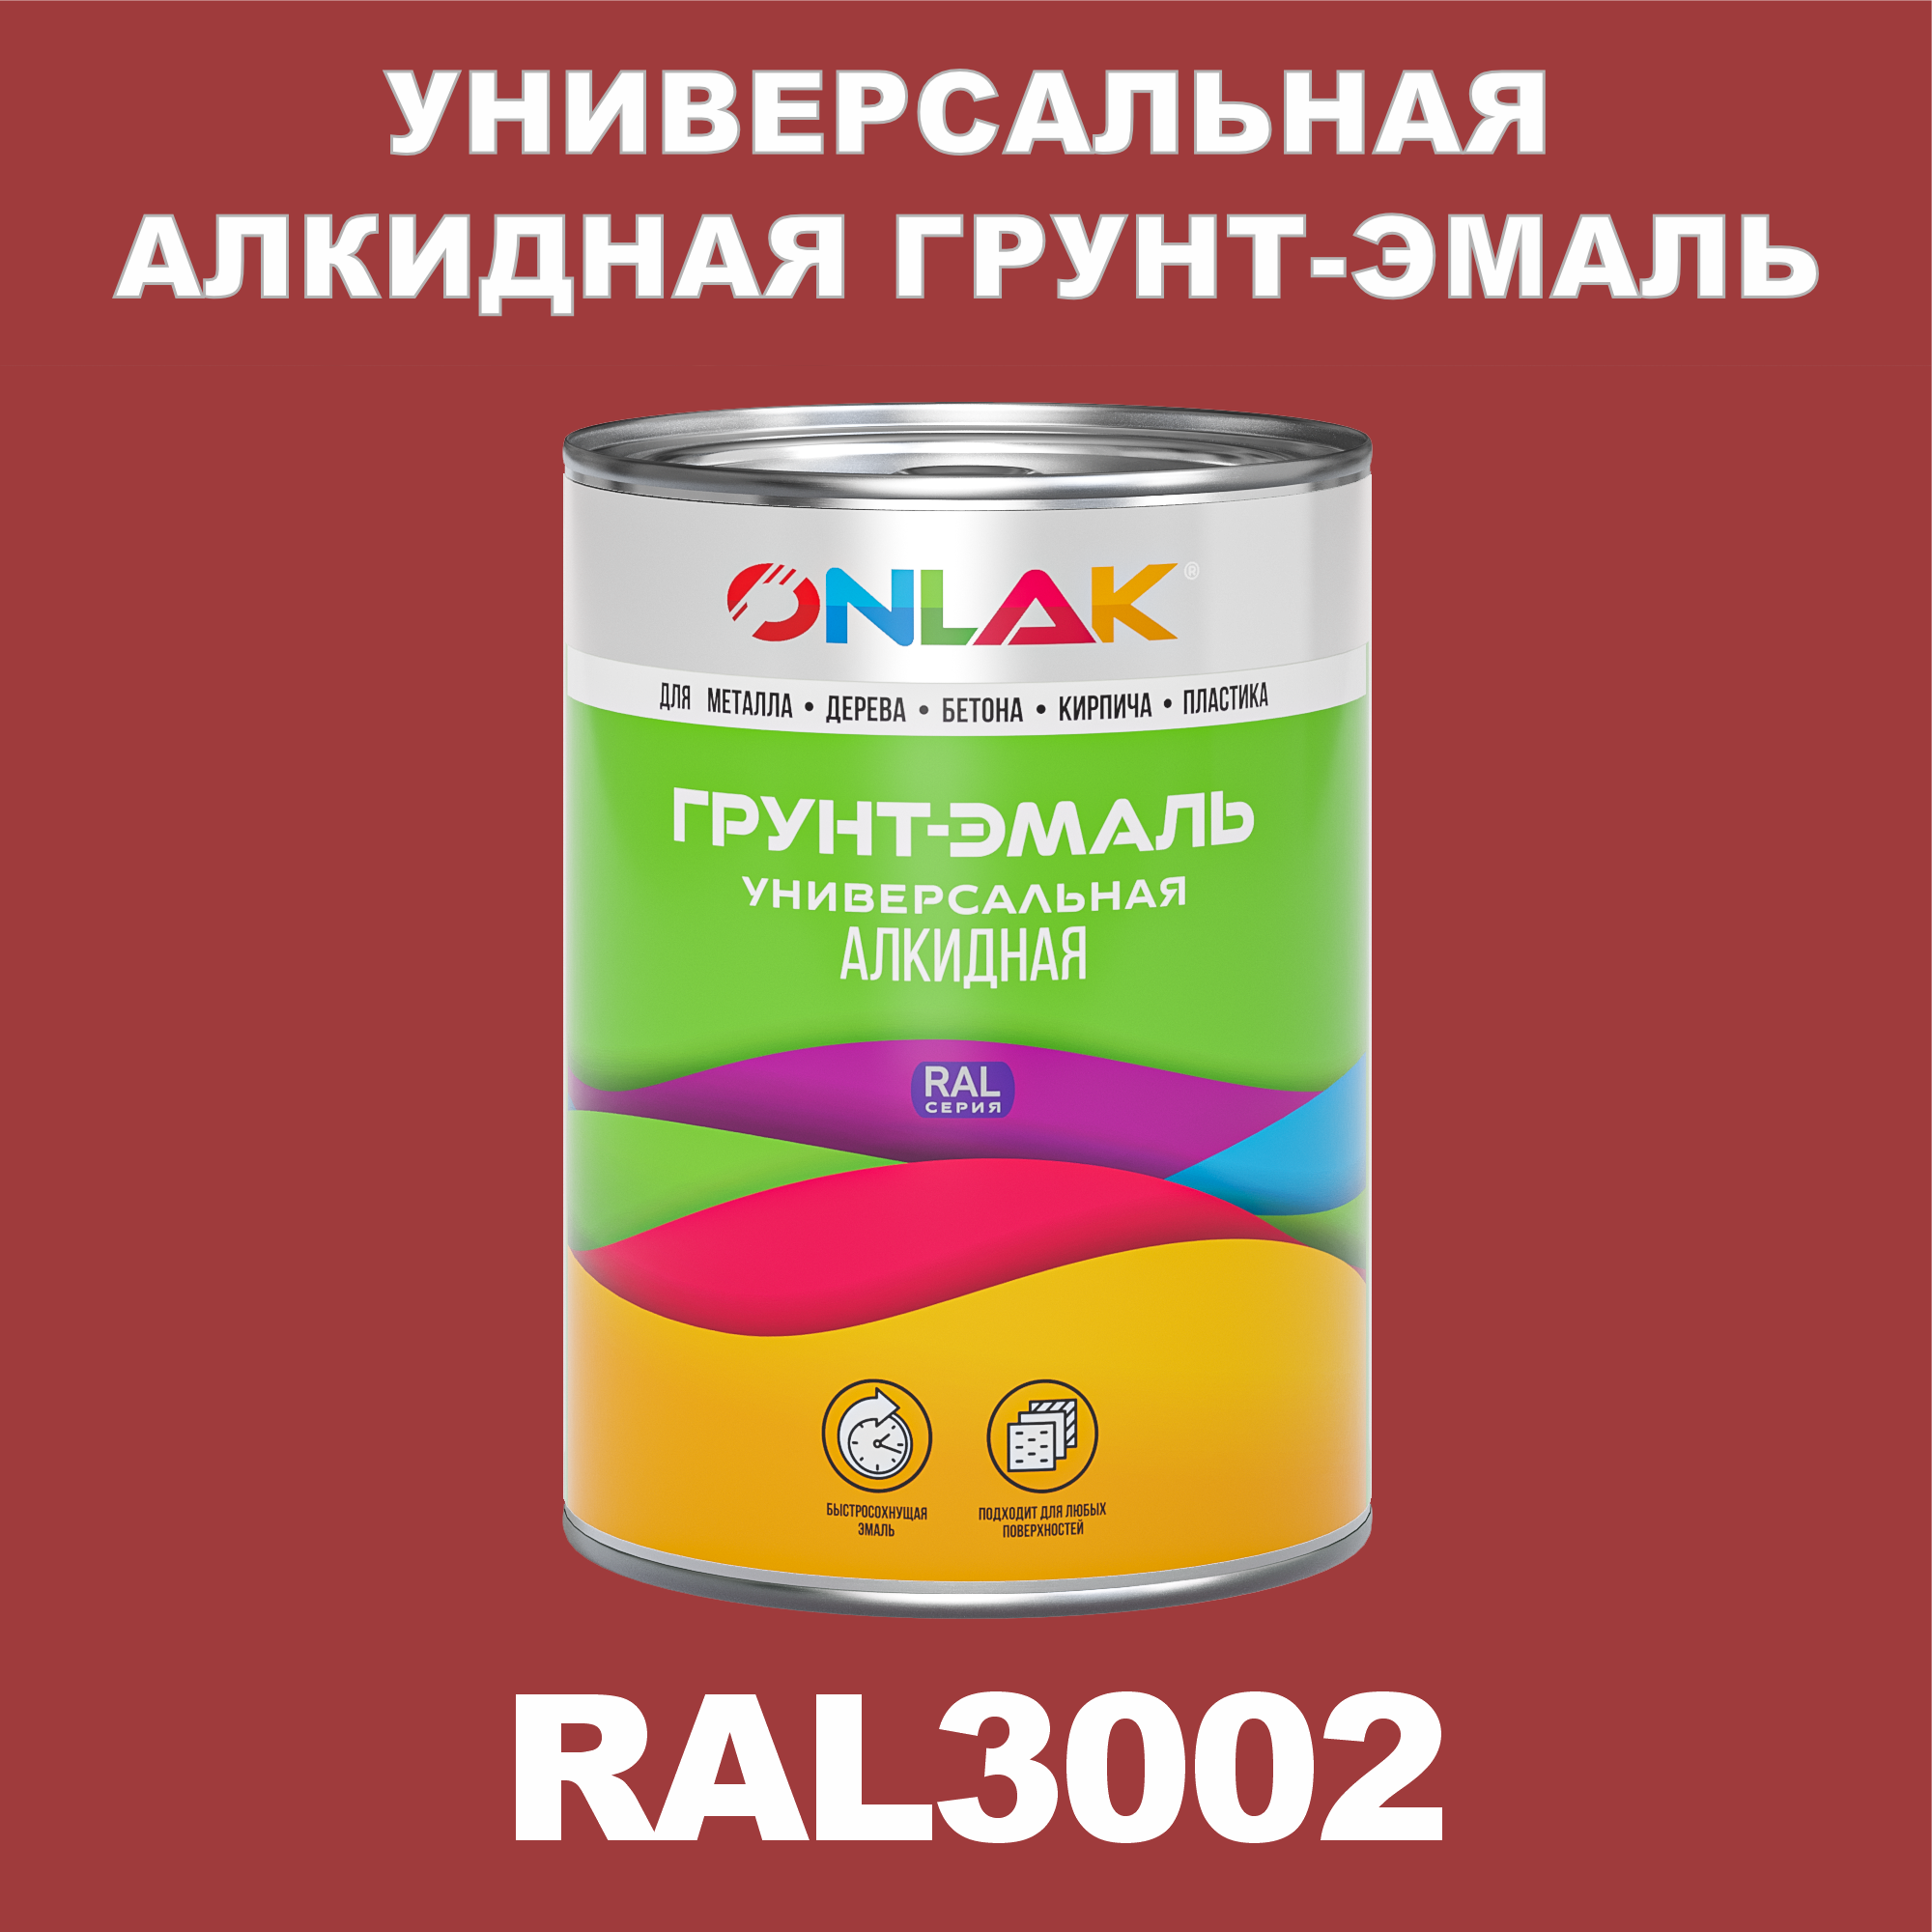 Грунт-эмаль ONLAK 1К RAL3002 антикоррозионная алкидная по металлу по ржавчине 1 кг грунт эмаль skladno по ржавчине алкидная желтая 1 8 кг